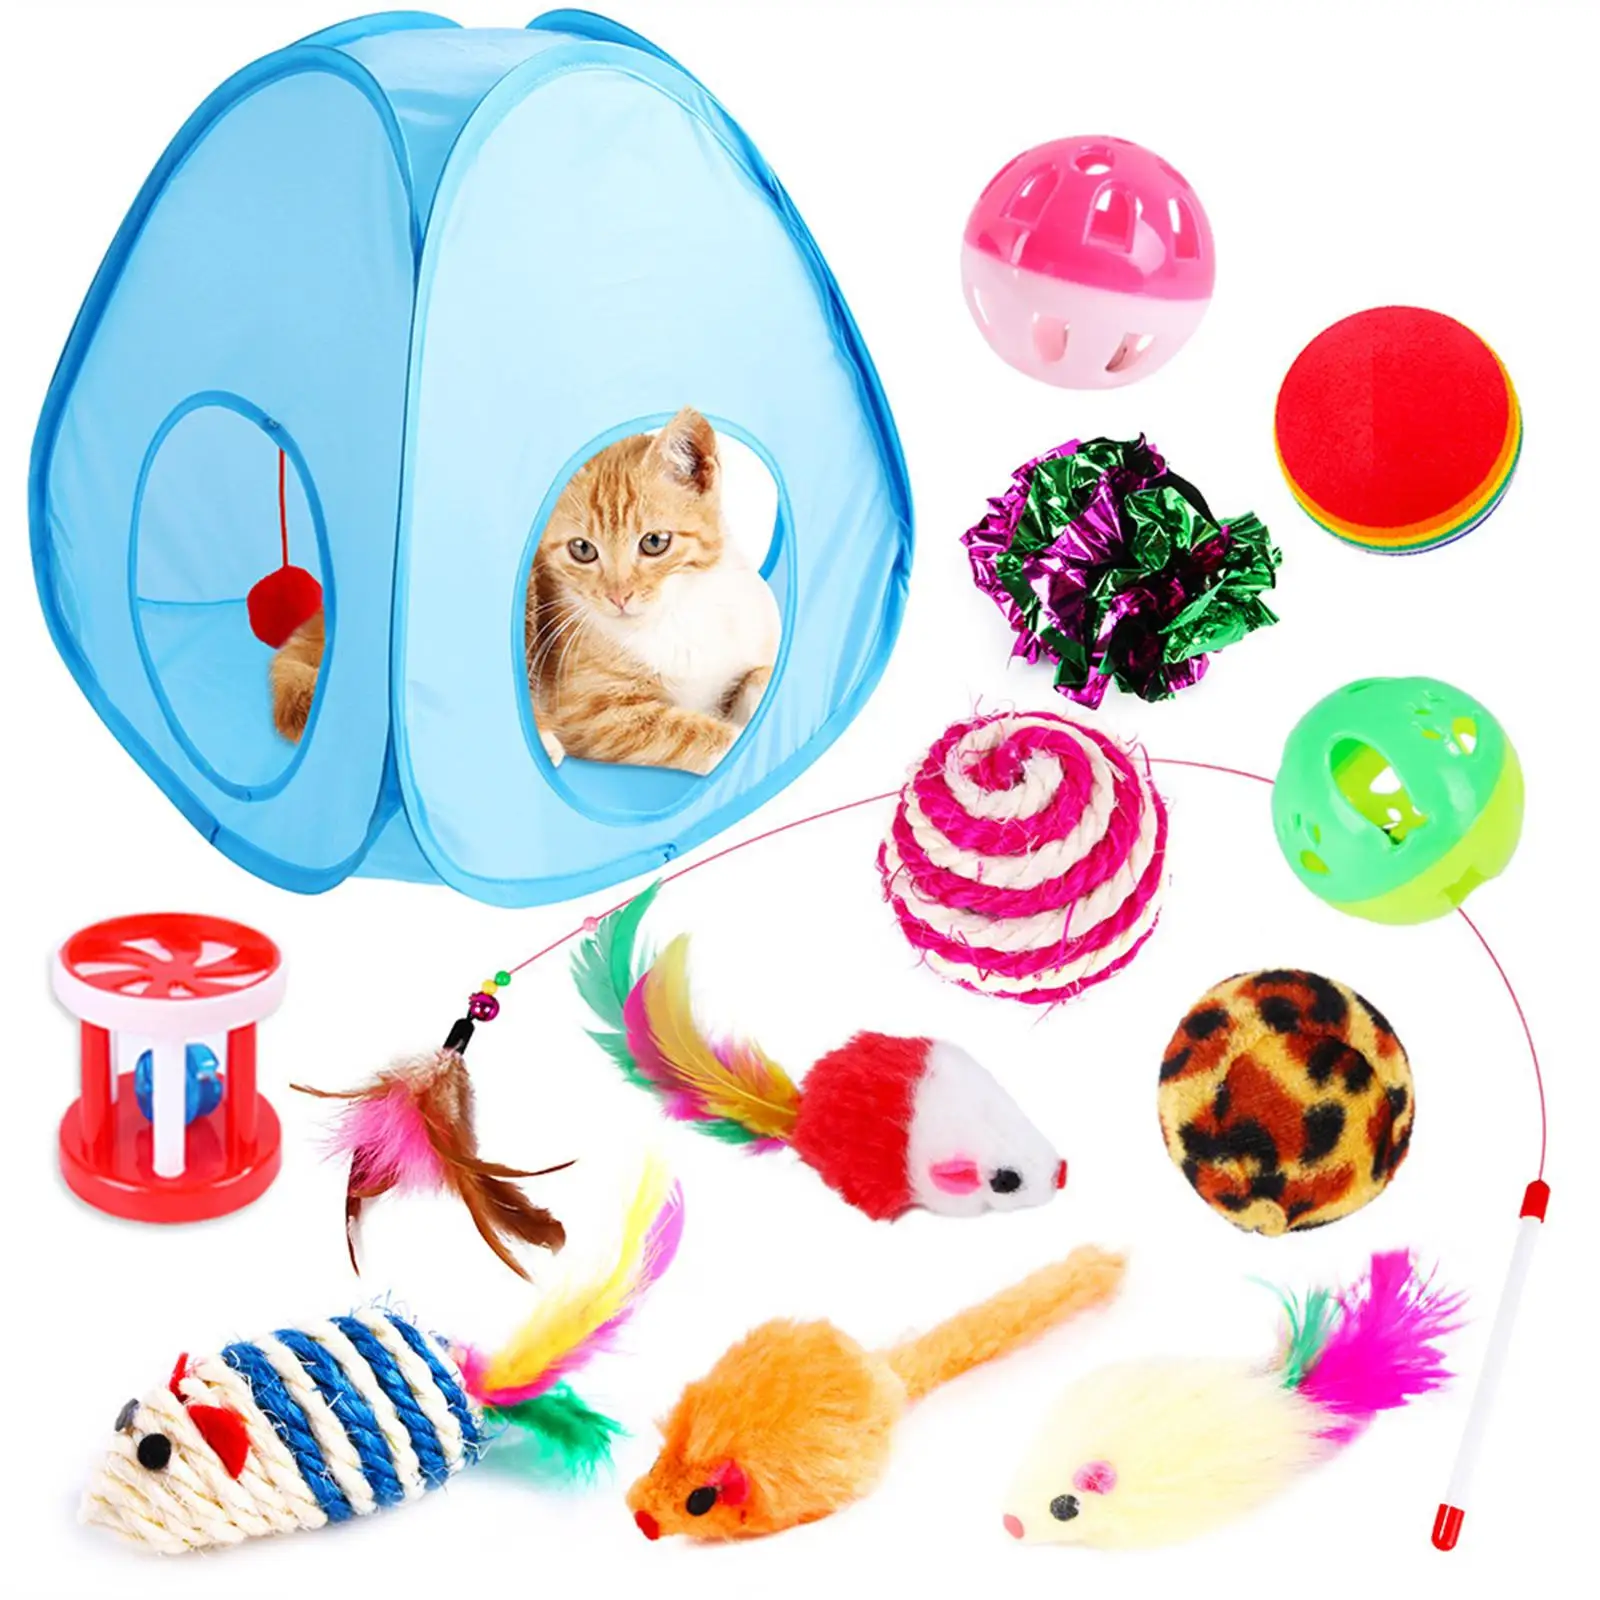 

13 шт. набор игрушек для кошек, перьевая игрушка, складная палатка, палочка для кошек, складной домик для кошек, палатка для кошек, товары для кошек